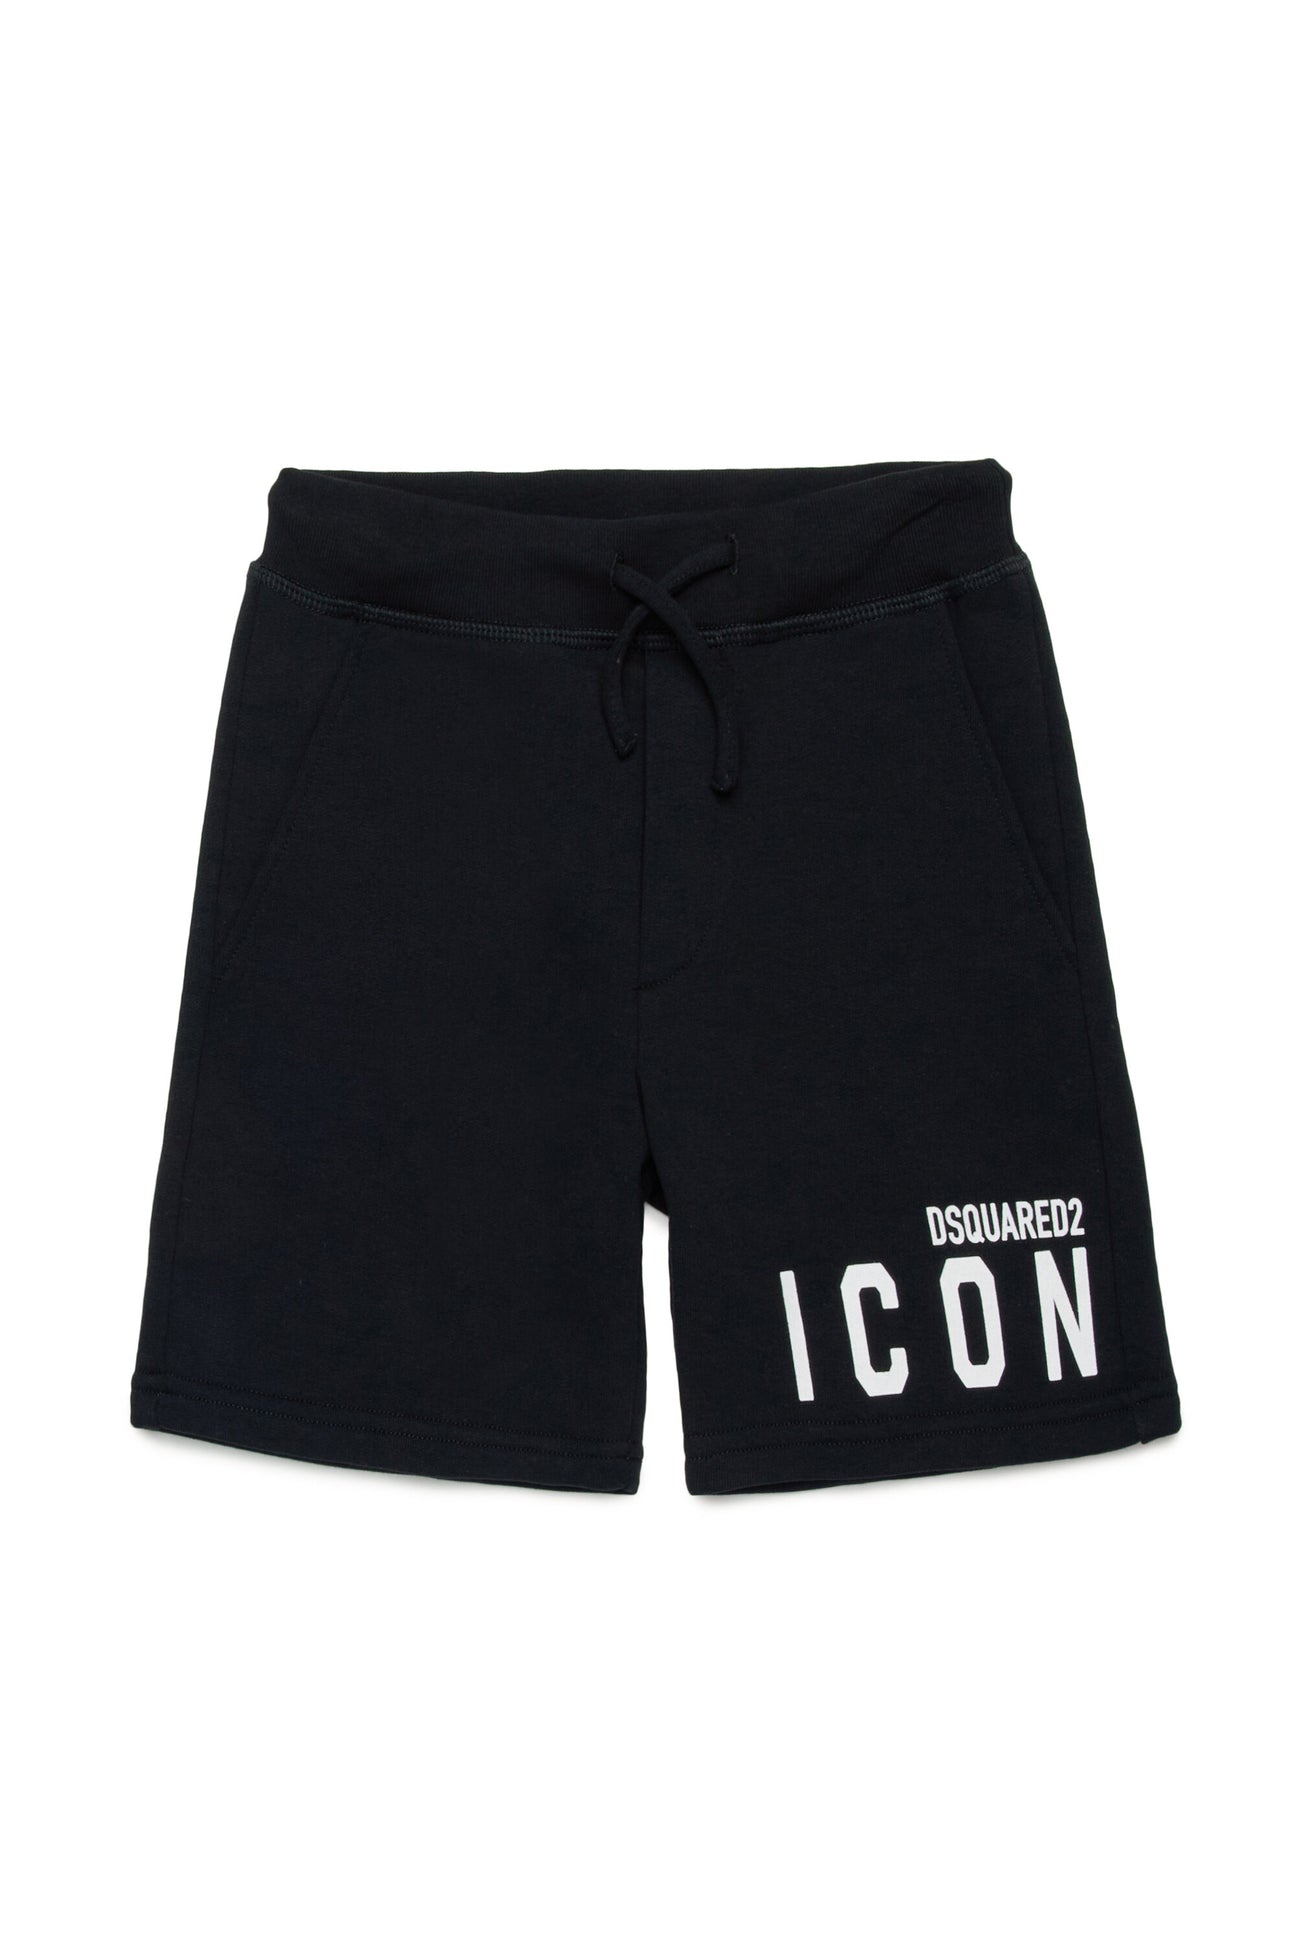 Pantalones cortos en chándal de la marca Icon 